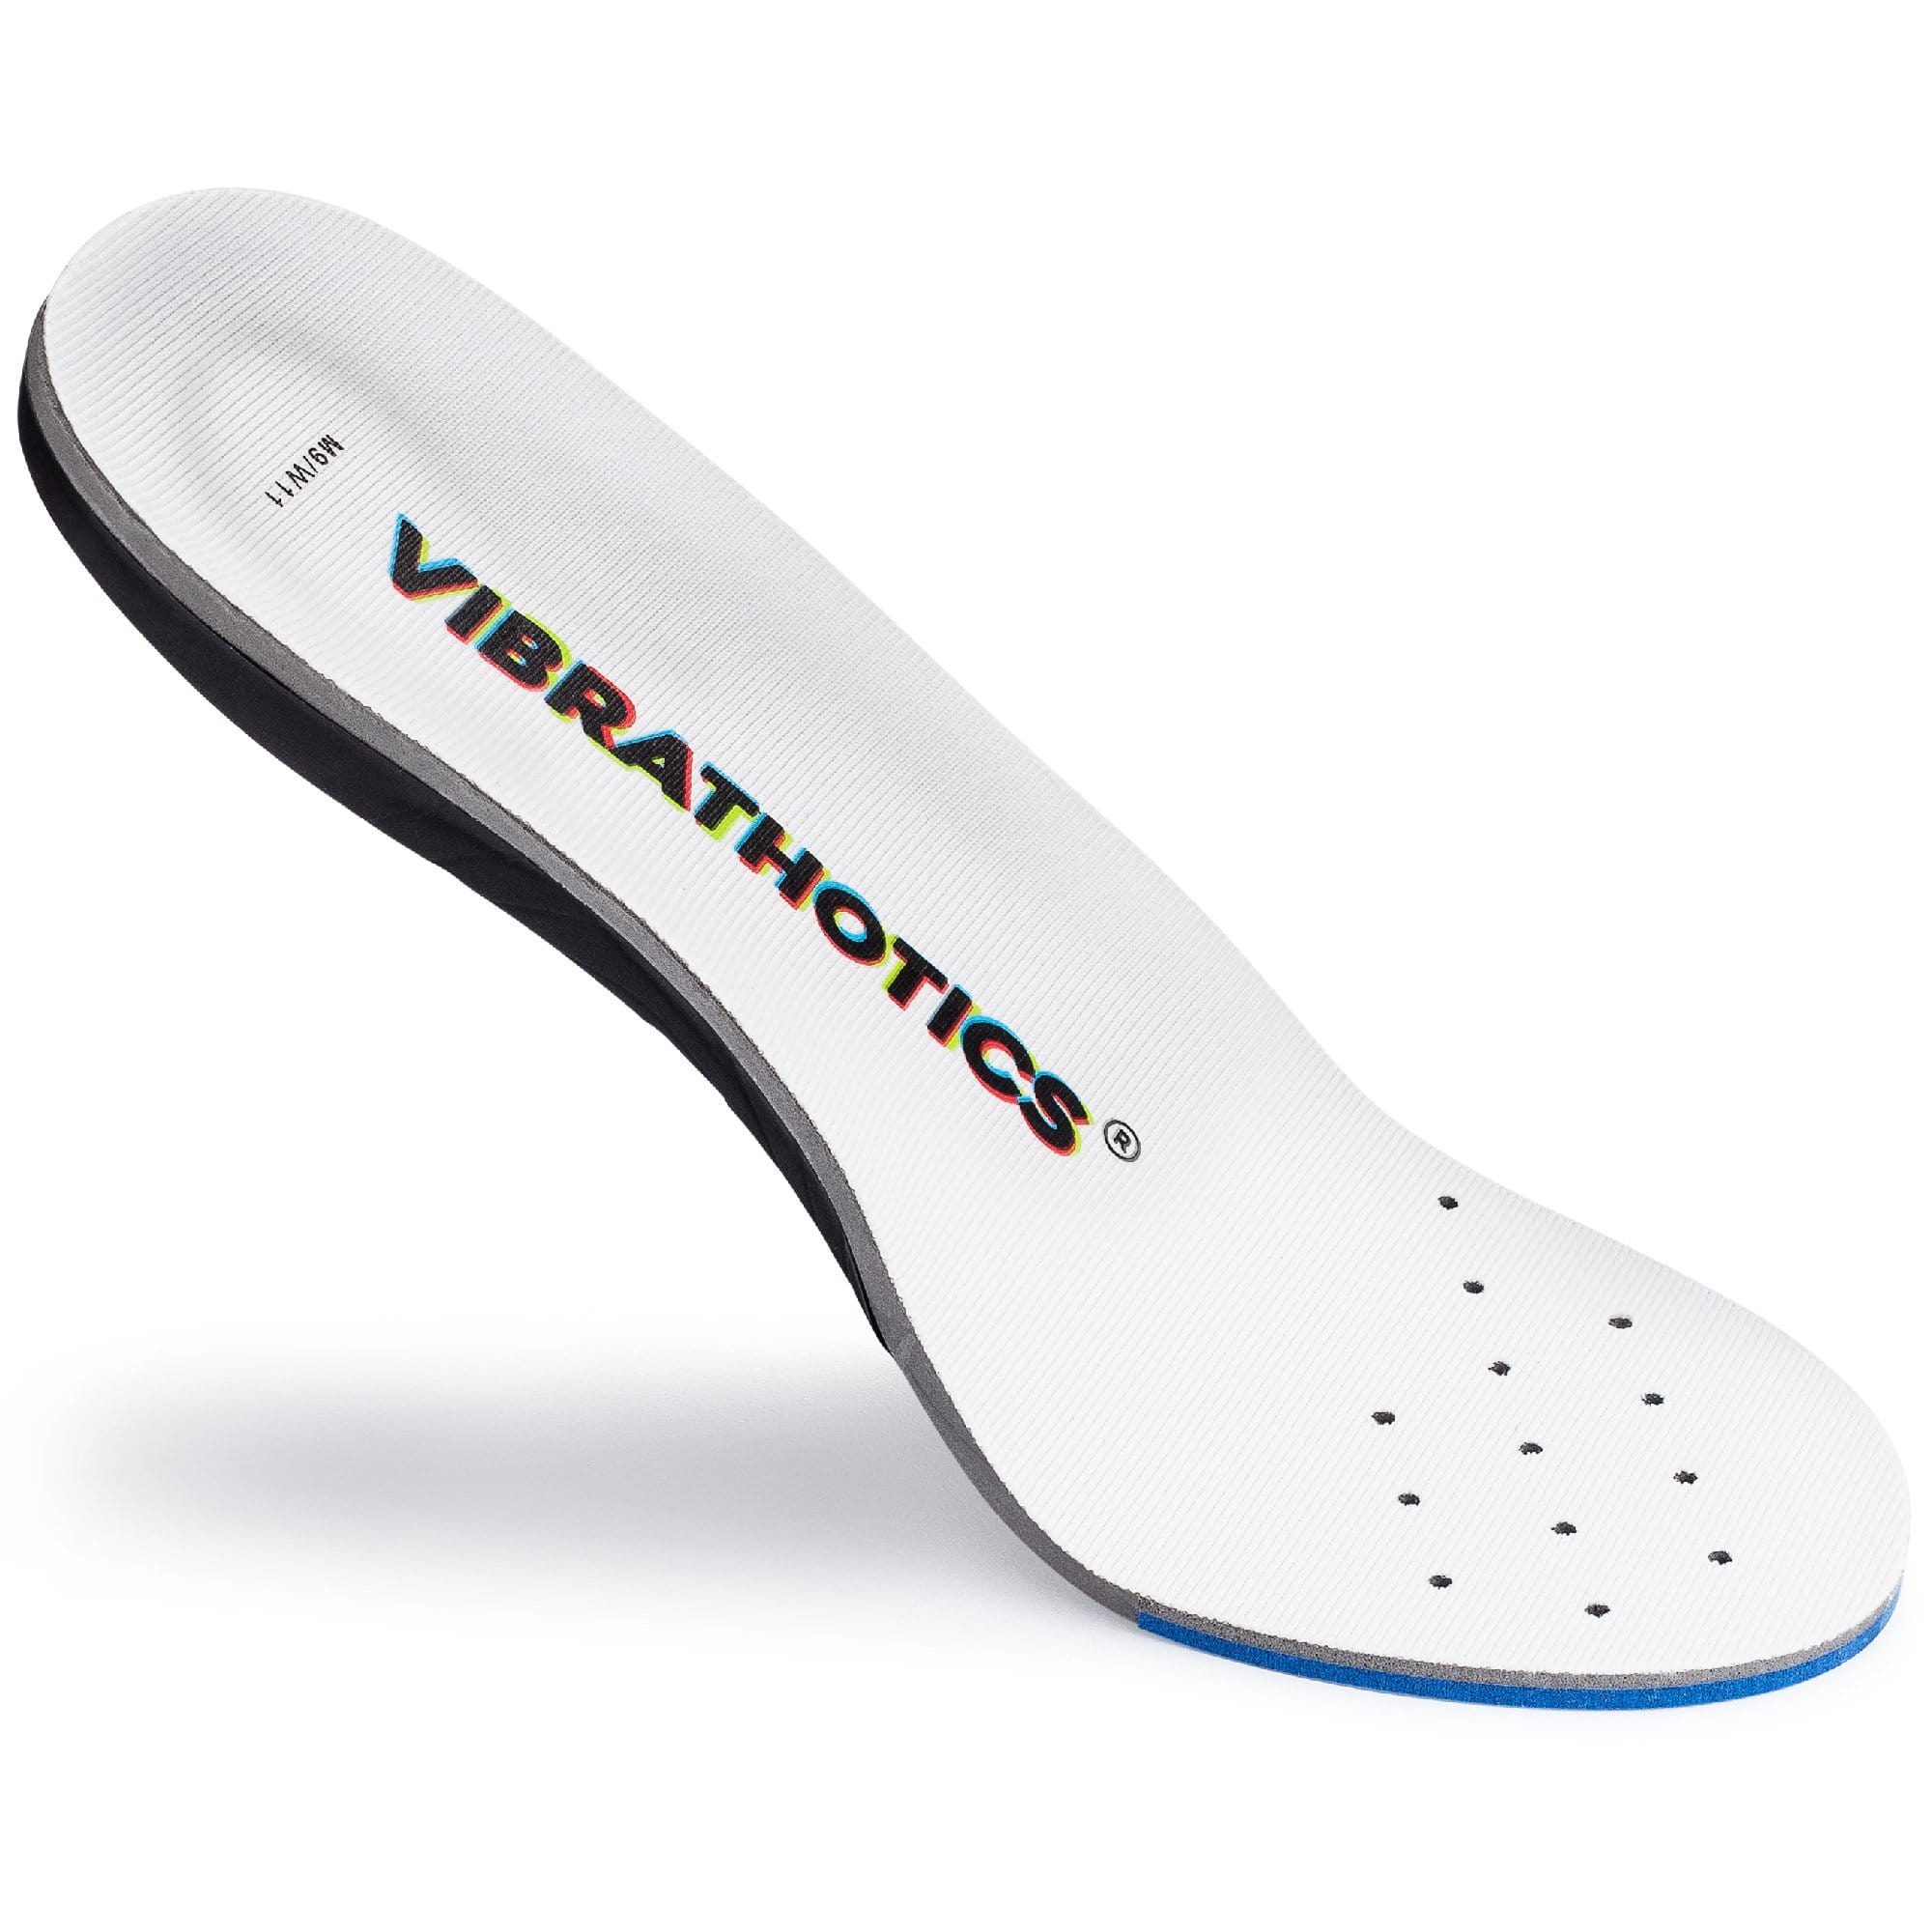 Vibrathotics V2 - Vibrating Shoe Insoles